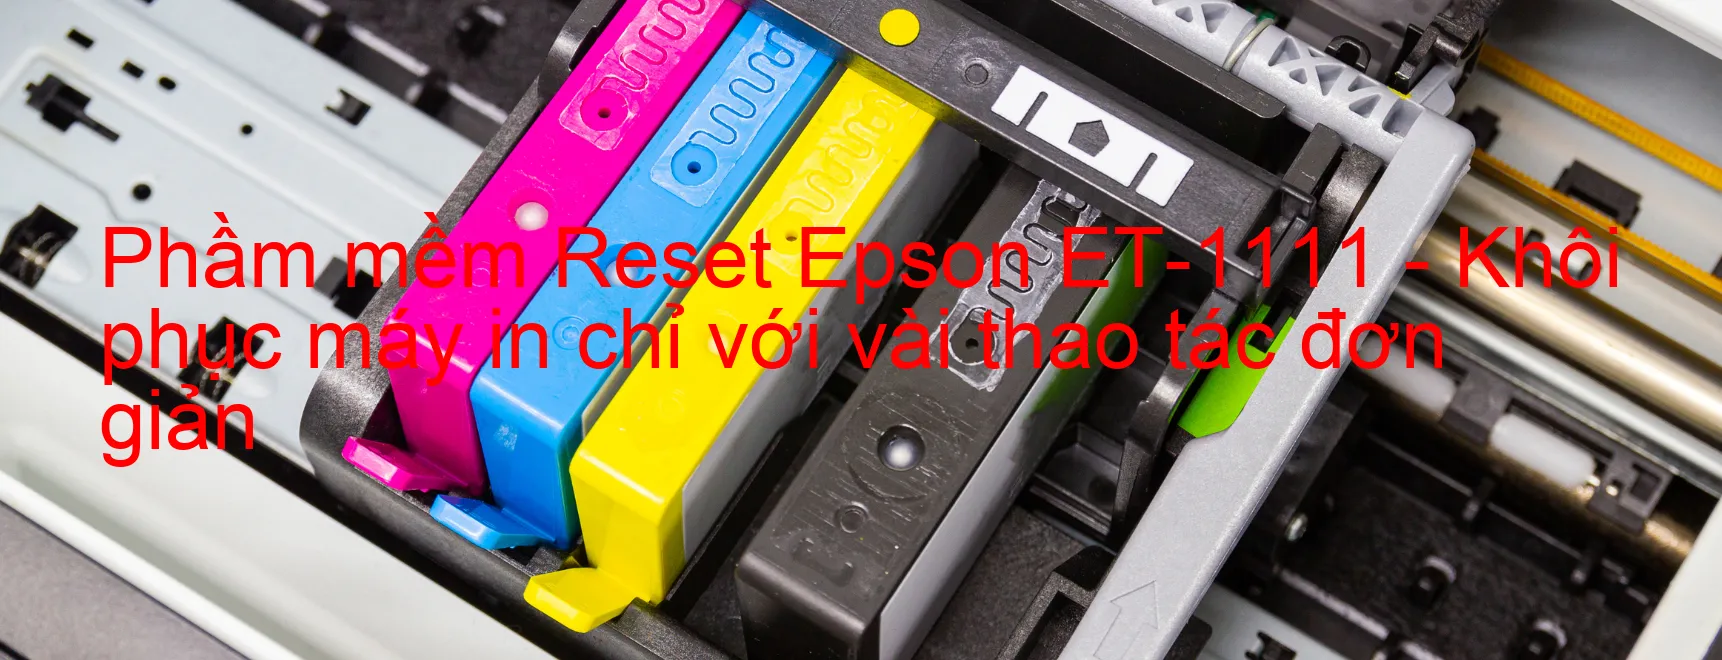 Phầm mềm Reset Epson ET-1111 - Khôi phục máy in chỉ với vài thao tác đơn giản